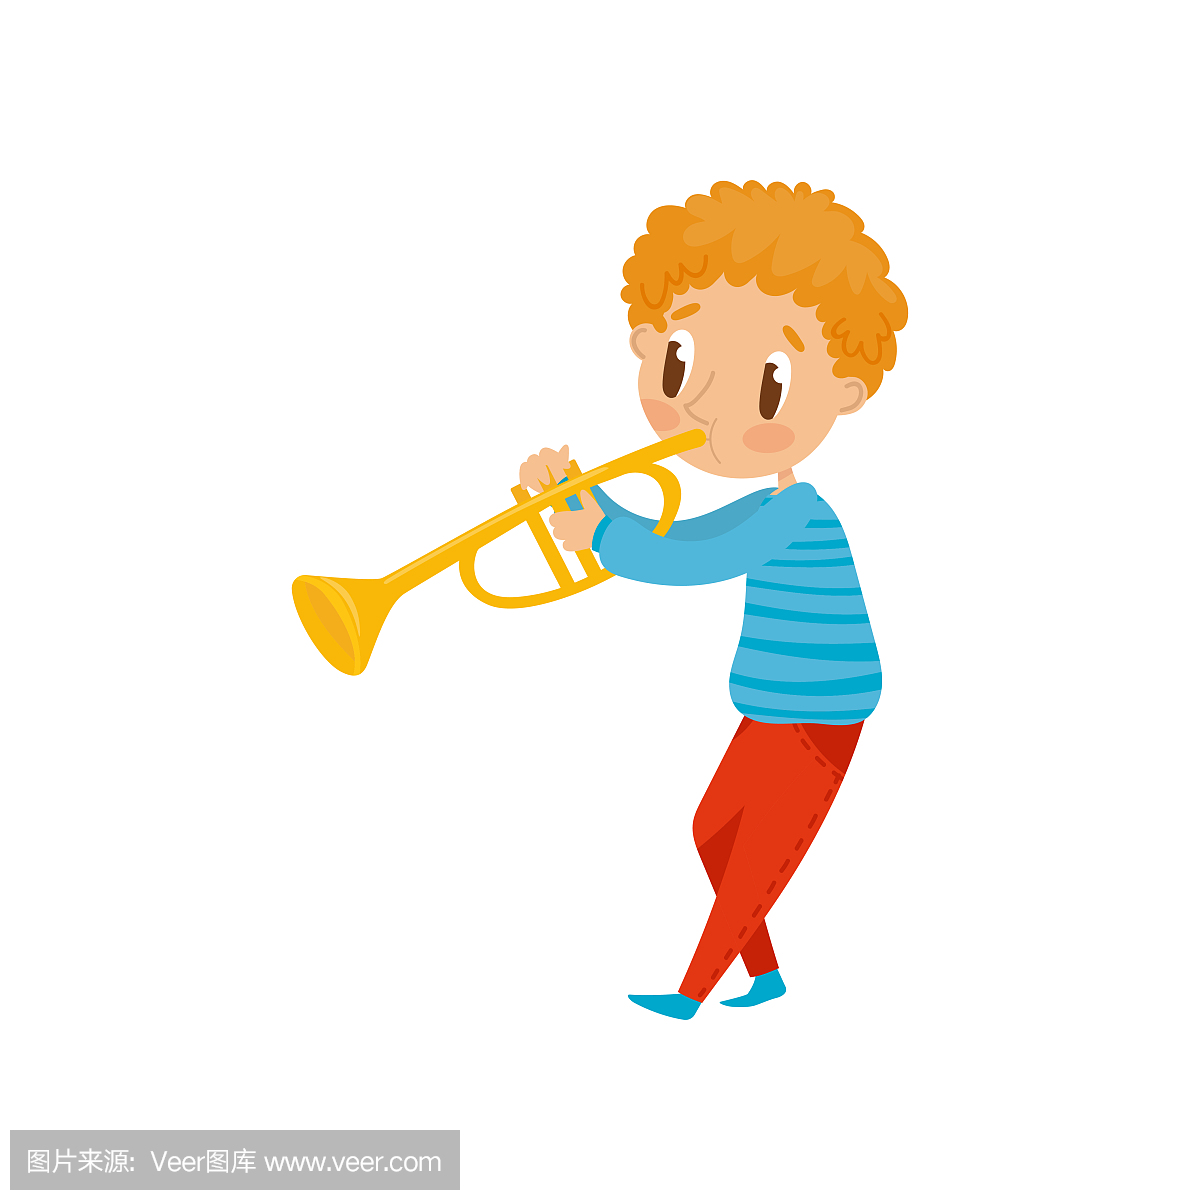 可爱的男孩玩喇叭,与乐器卡通矢量图在白色背